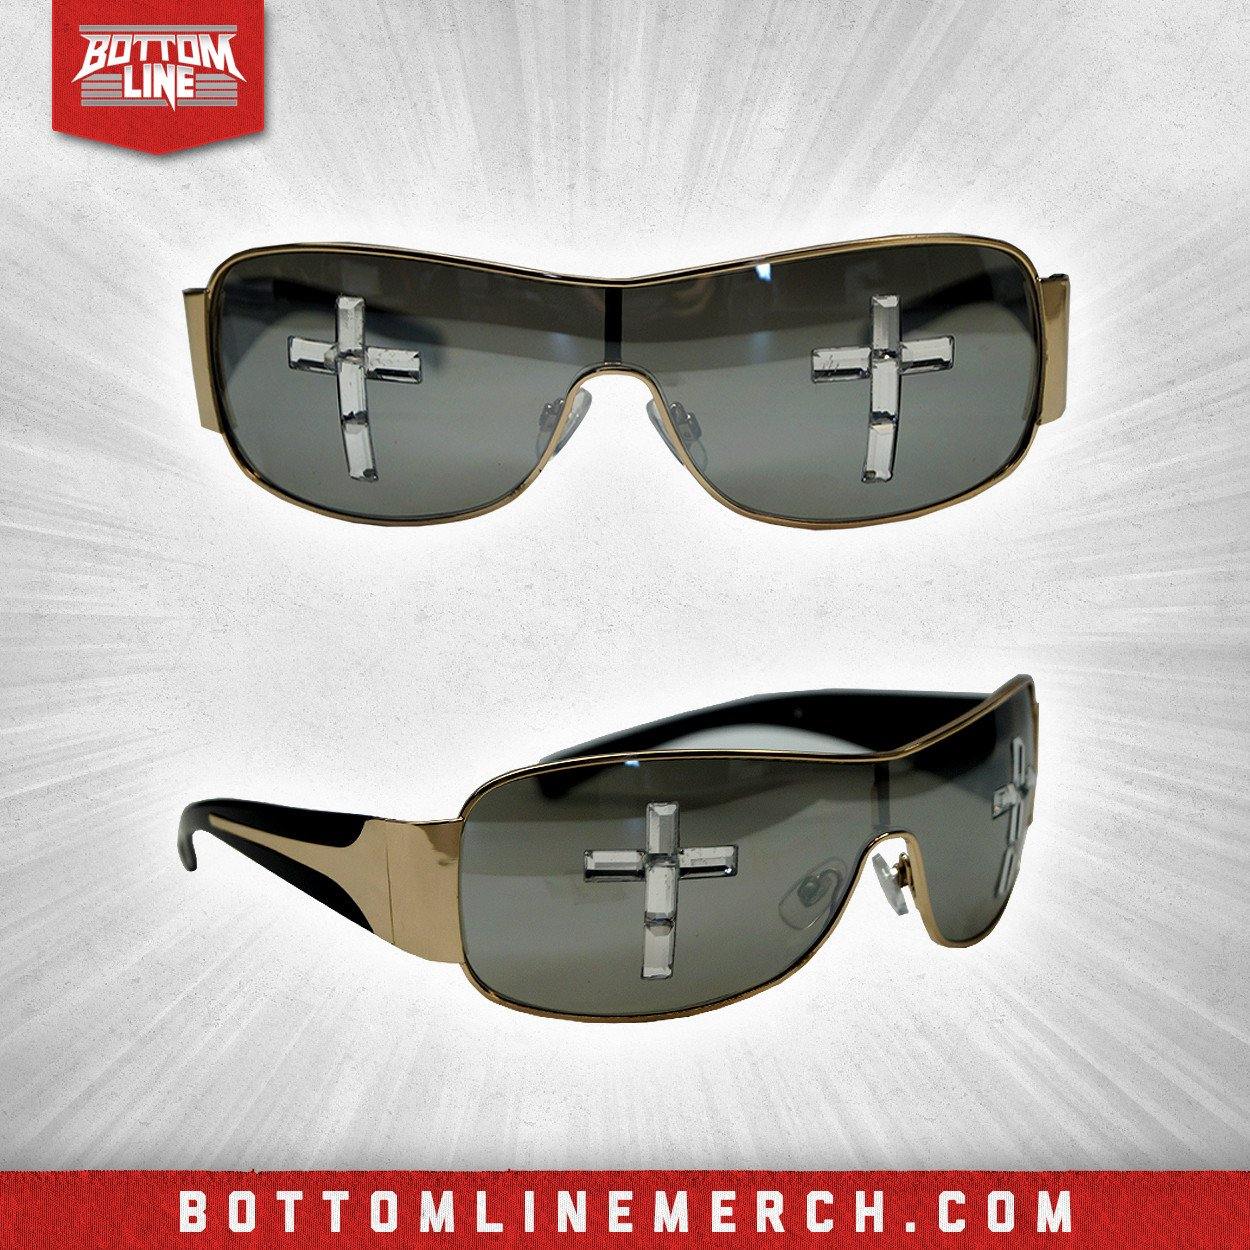 Buy Now – Johnny Mundo Sunglasses – Wrestler & Wrestling Merch – Bottom Line